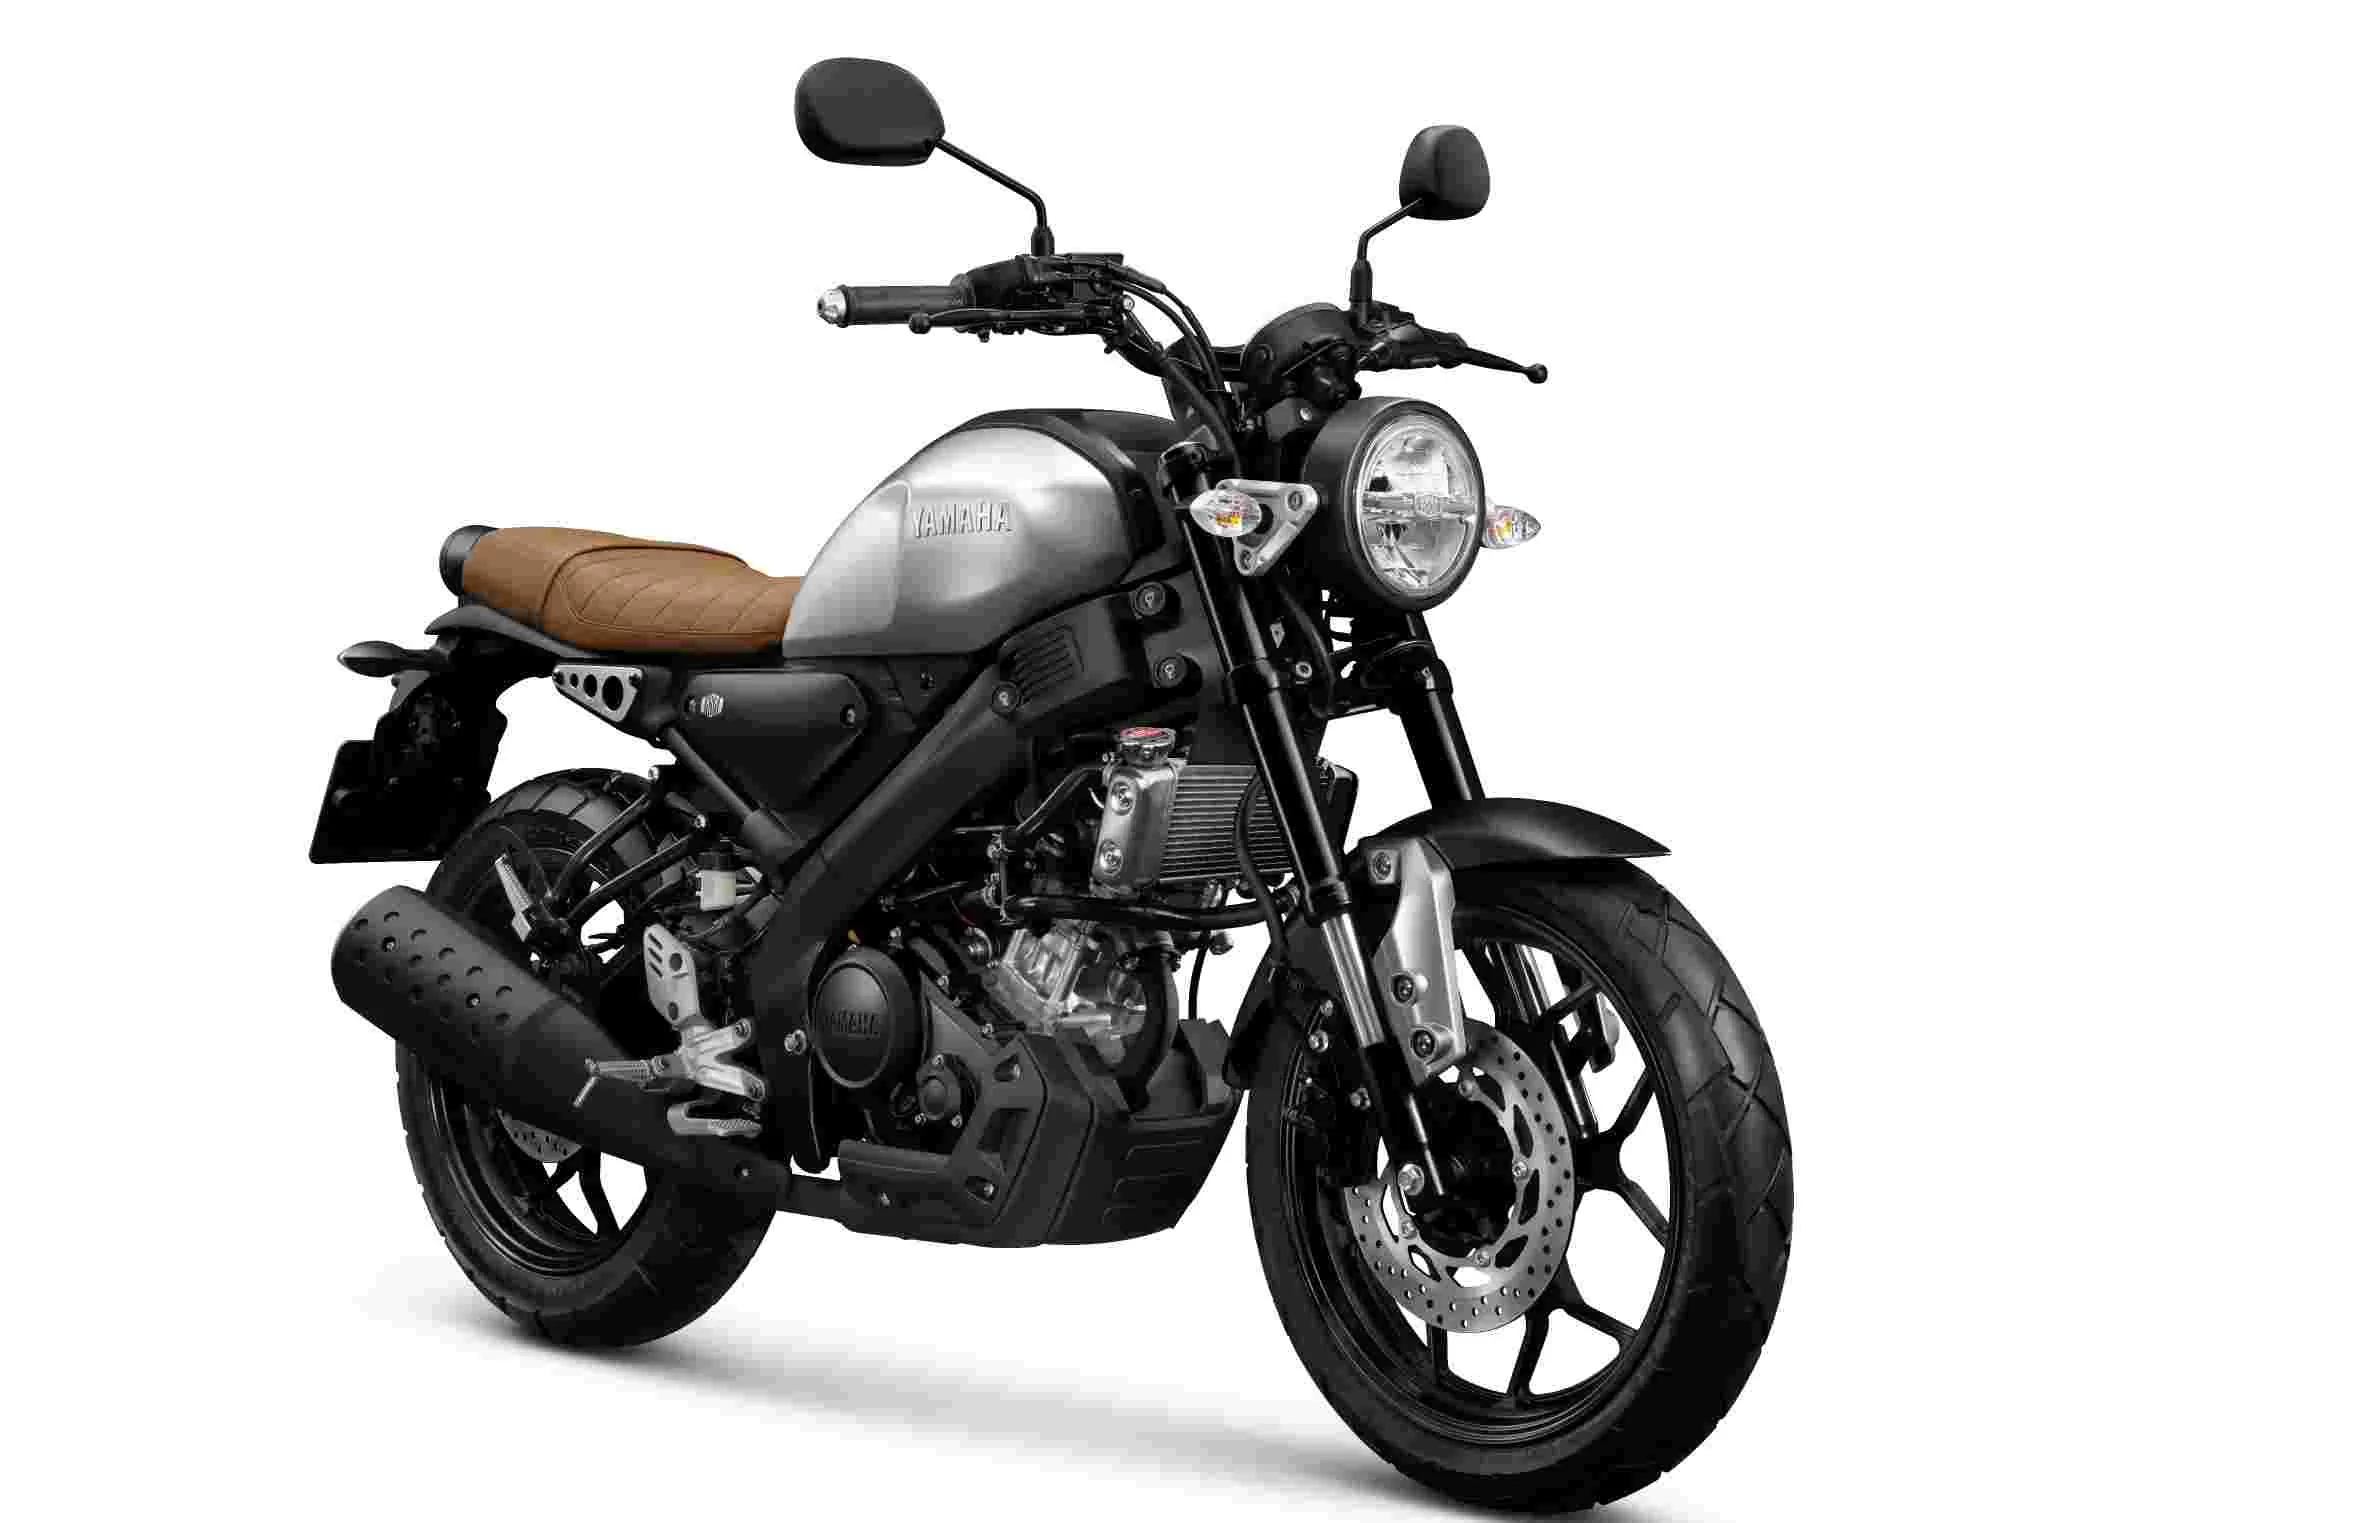 TERANYAR: Wujud varian XSR 155, motor sport heritage pabrikan Yamaha ini makin digemari. Bahkan mencatat dirinya sebagai Best Sport Retro dari penghargaan bergengsi Otomotif Award 2020.